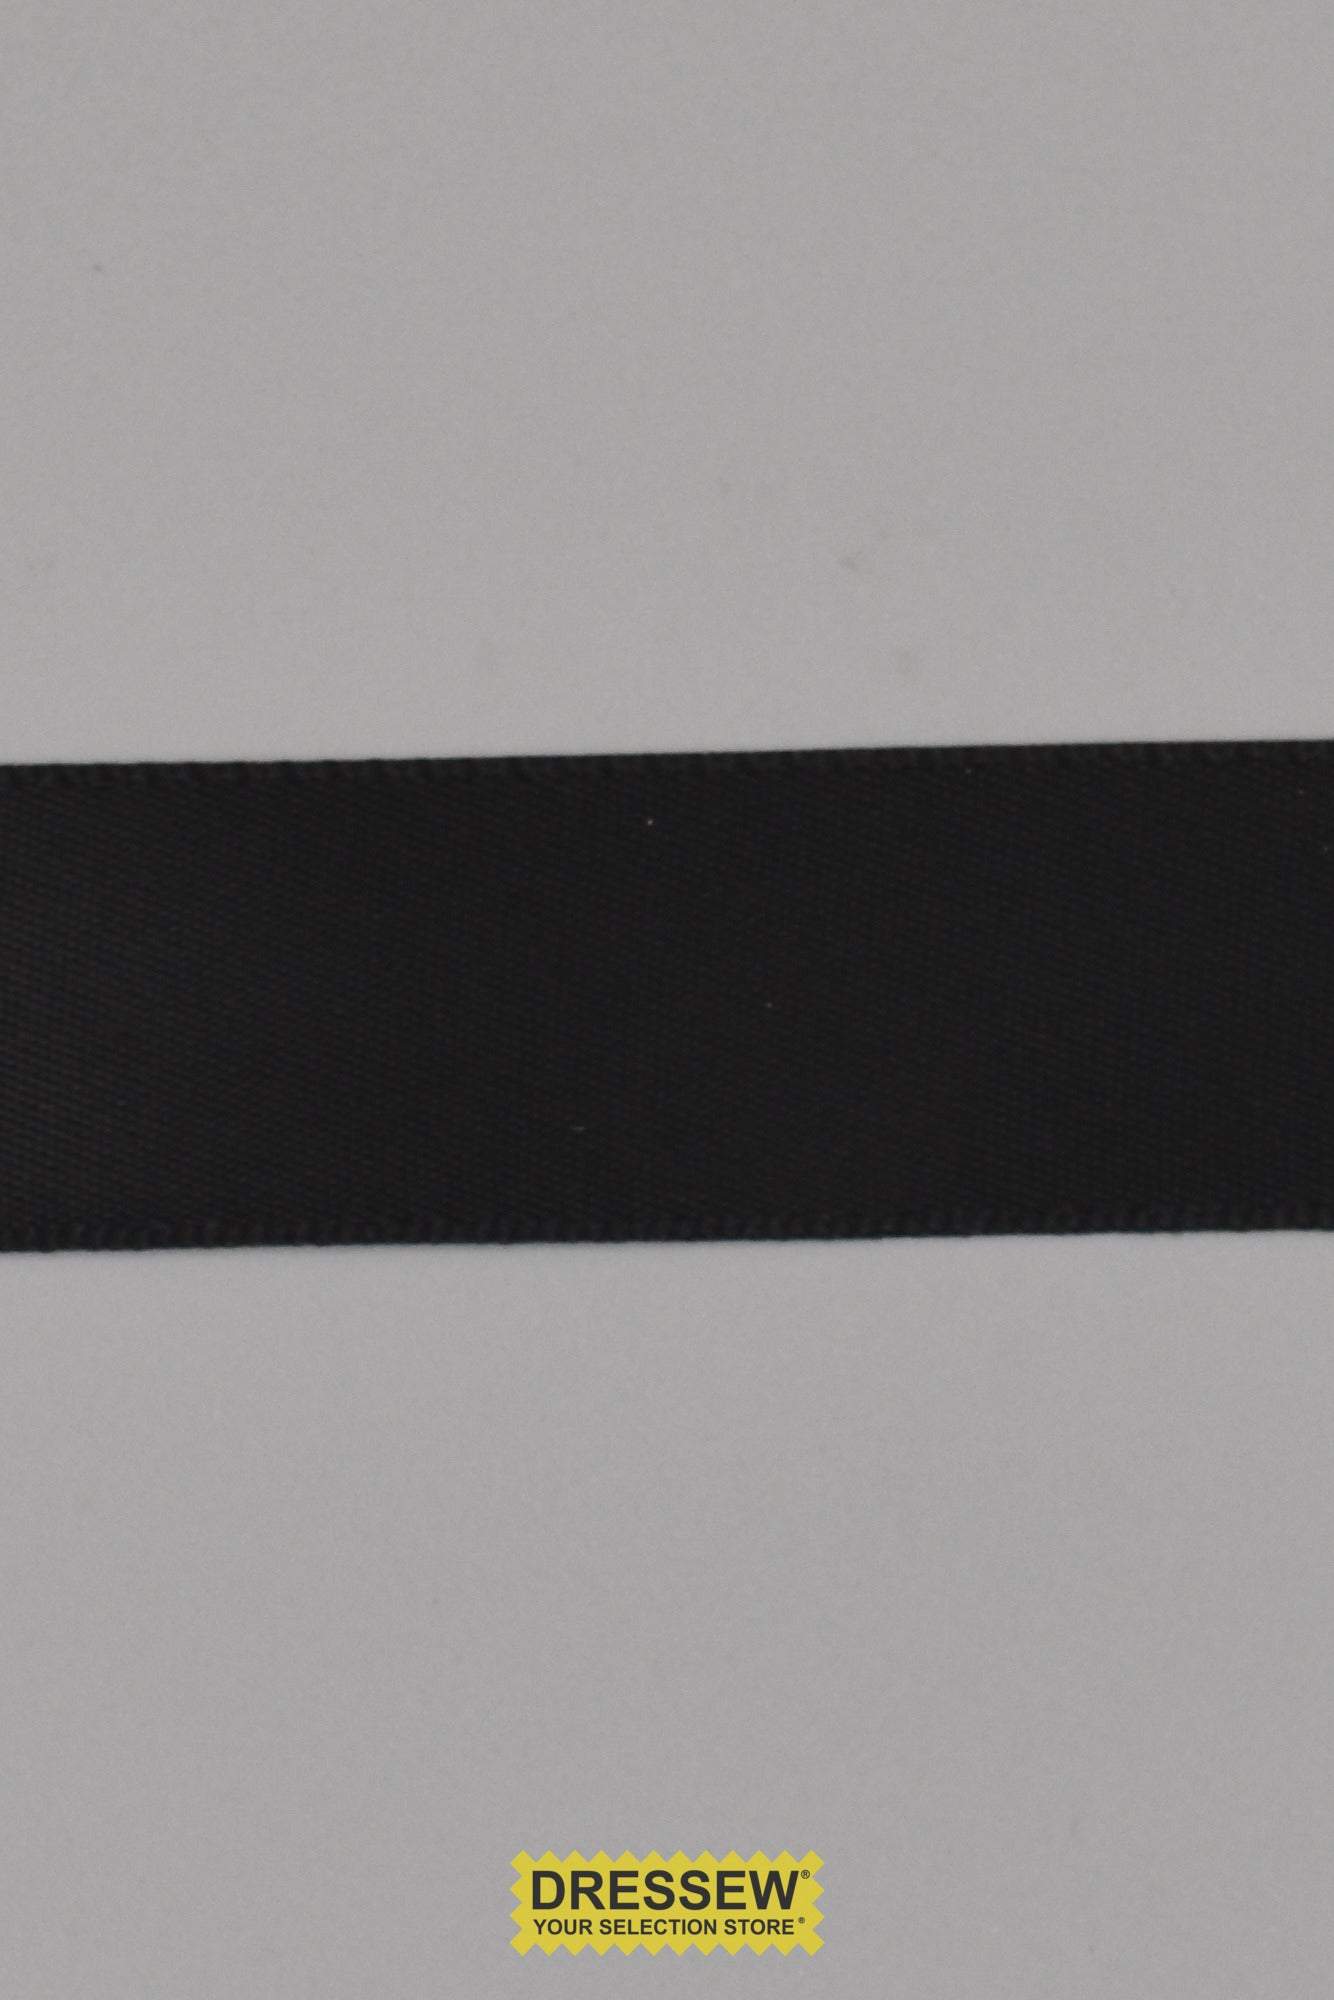 Single Face Satin Ribbon 22mm (7/8") Black